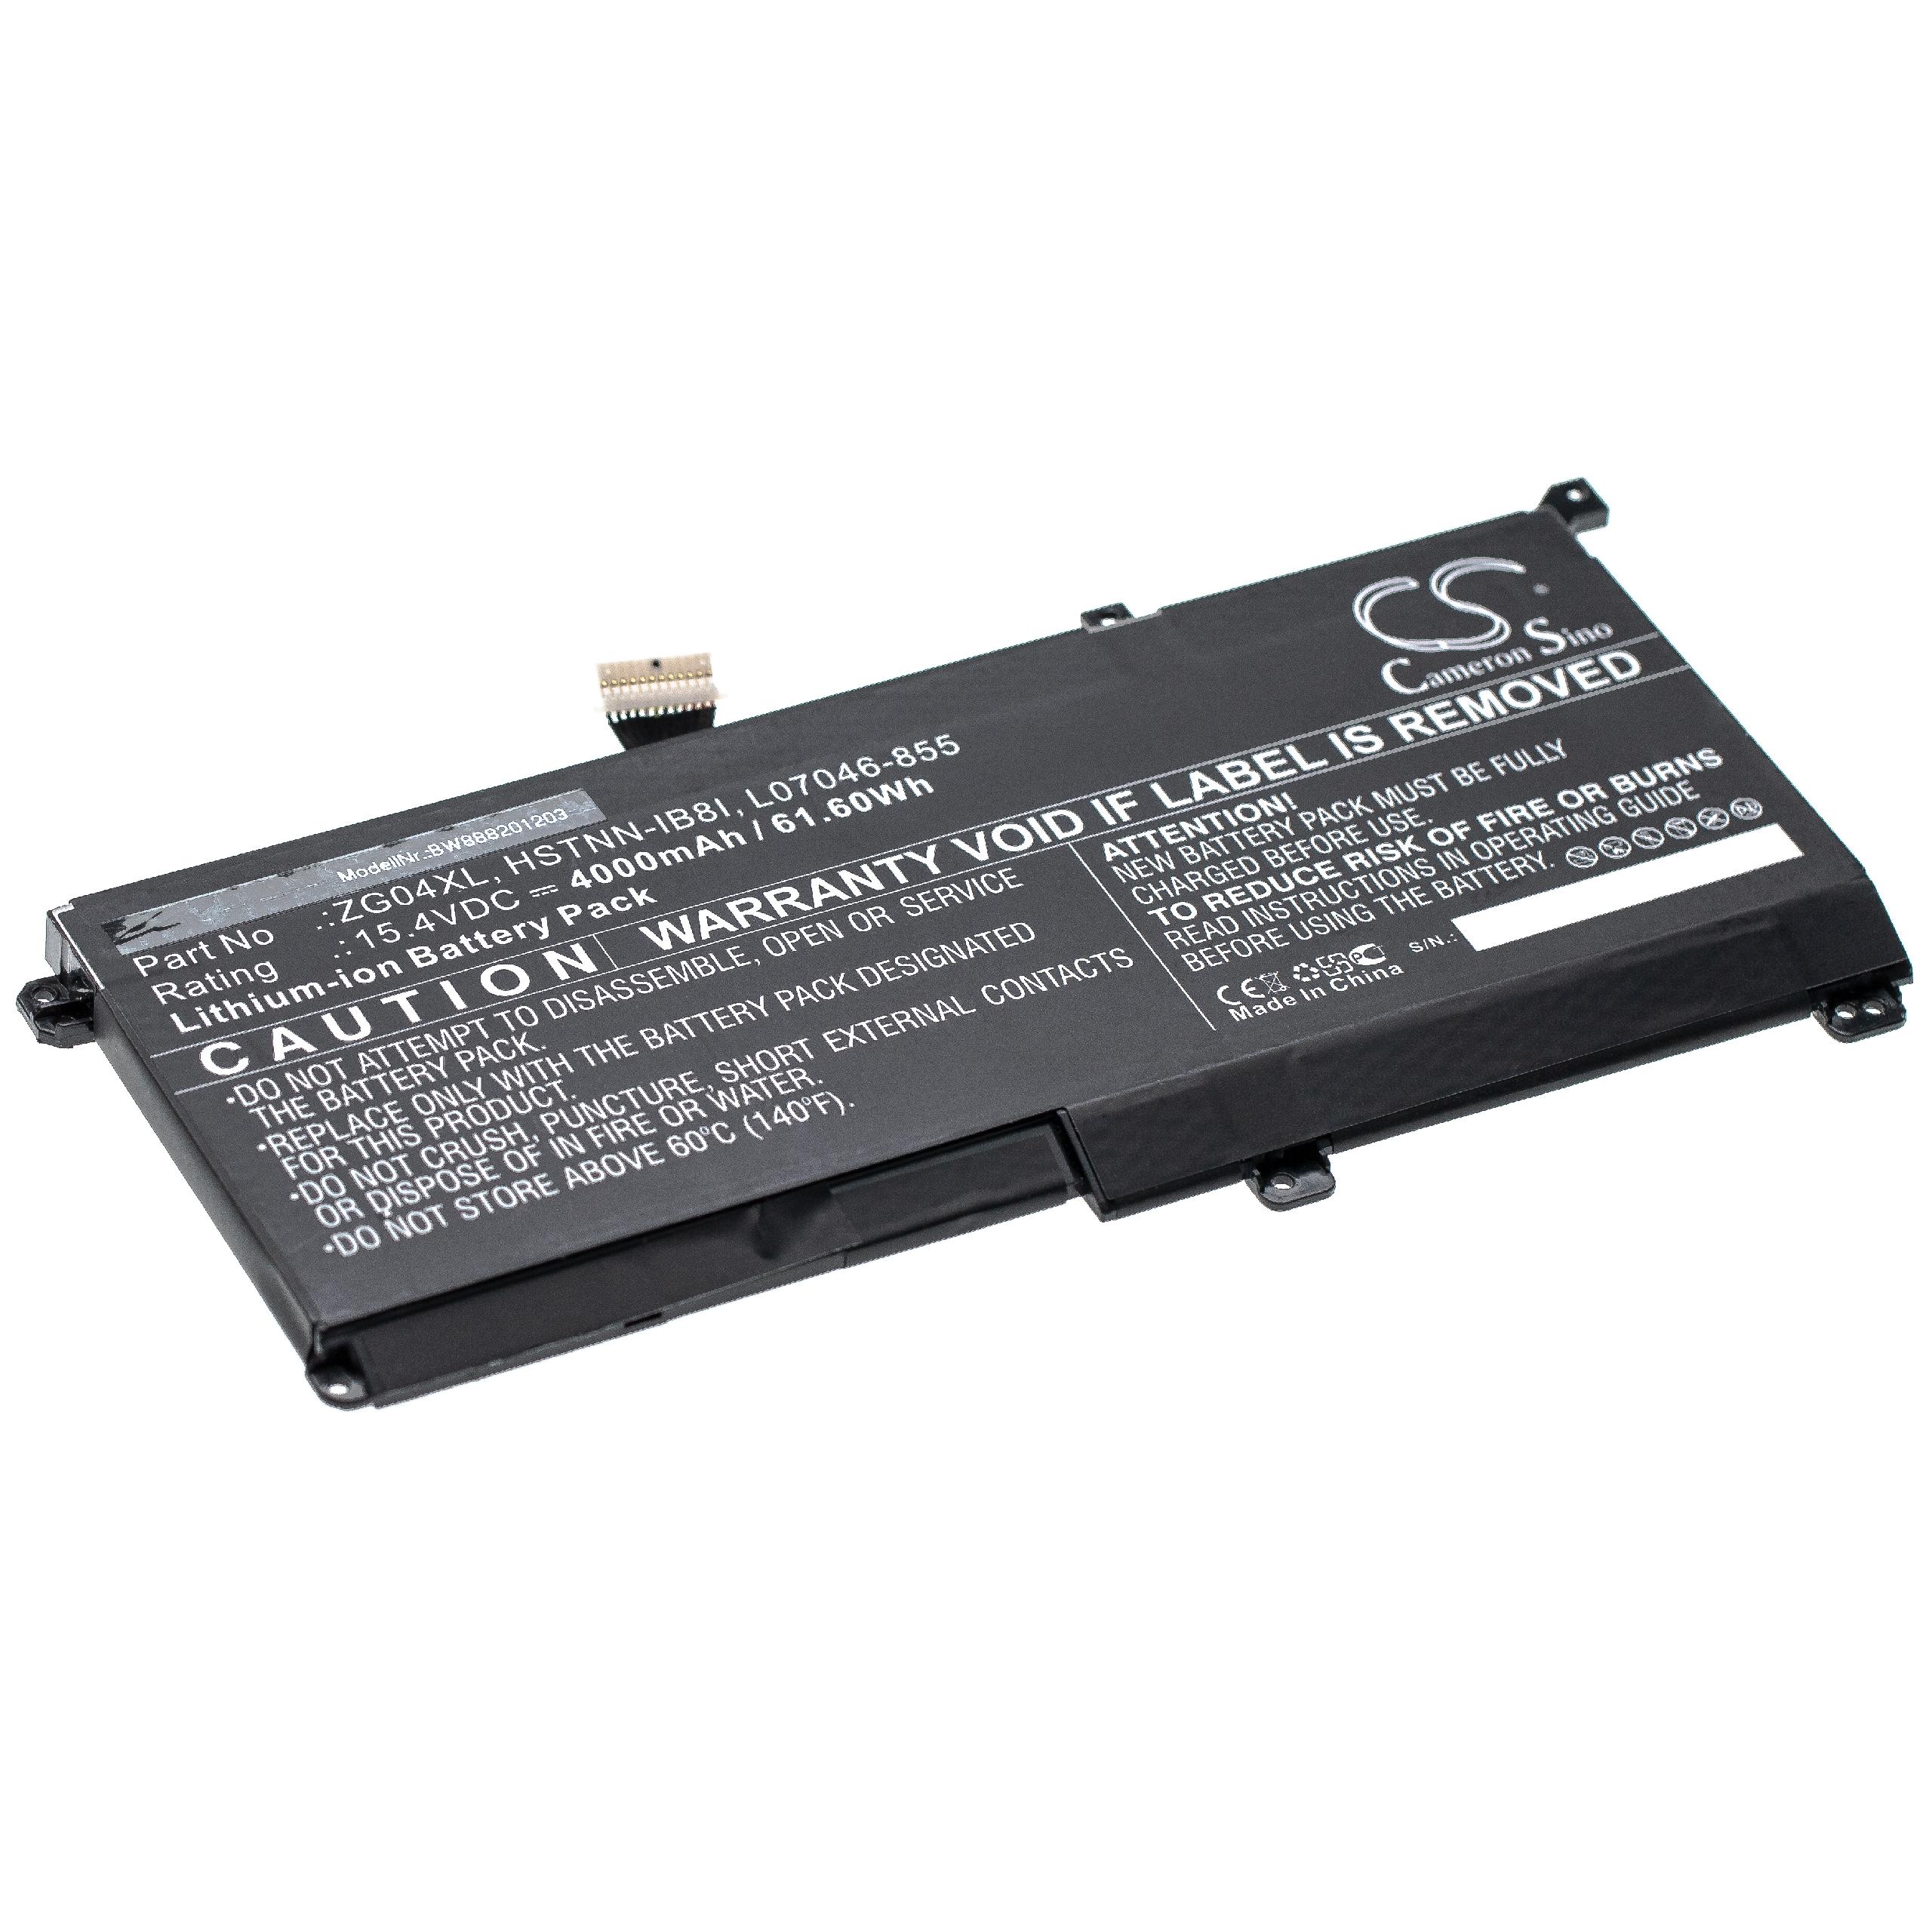 Batterie remplace HP L07046-855, L07352-1C1, HSTNN-IB8I pour ordinateur portable - 4000mAh 15,4V Li-ion, noir